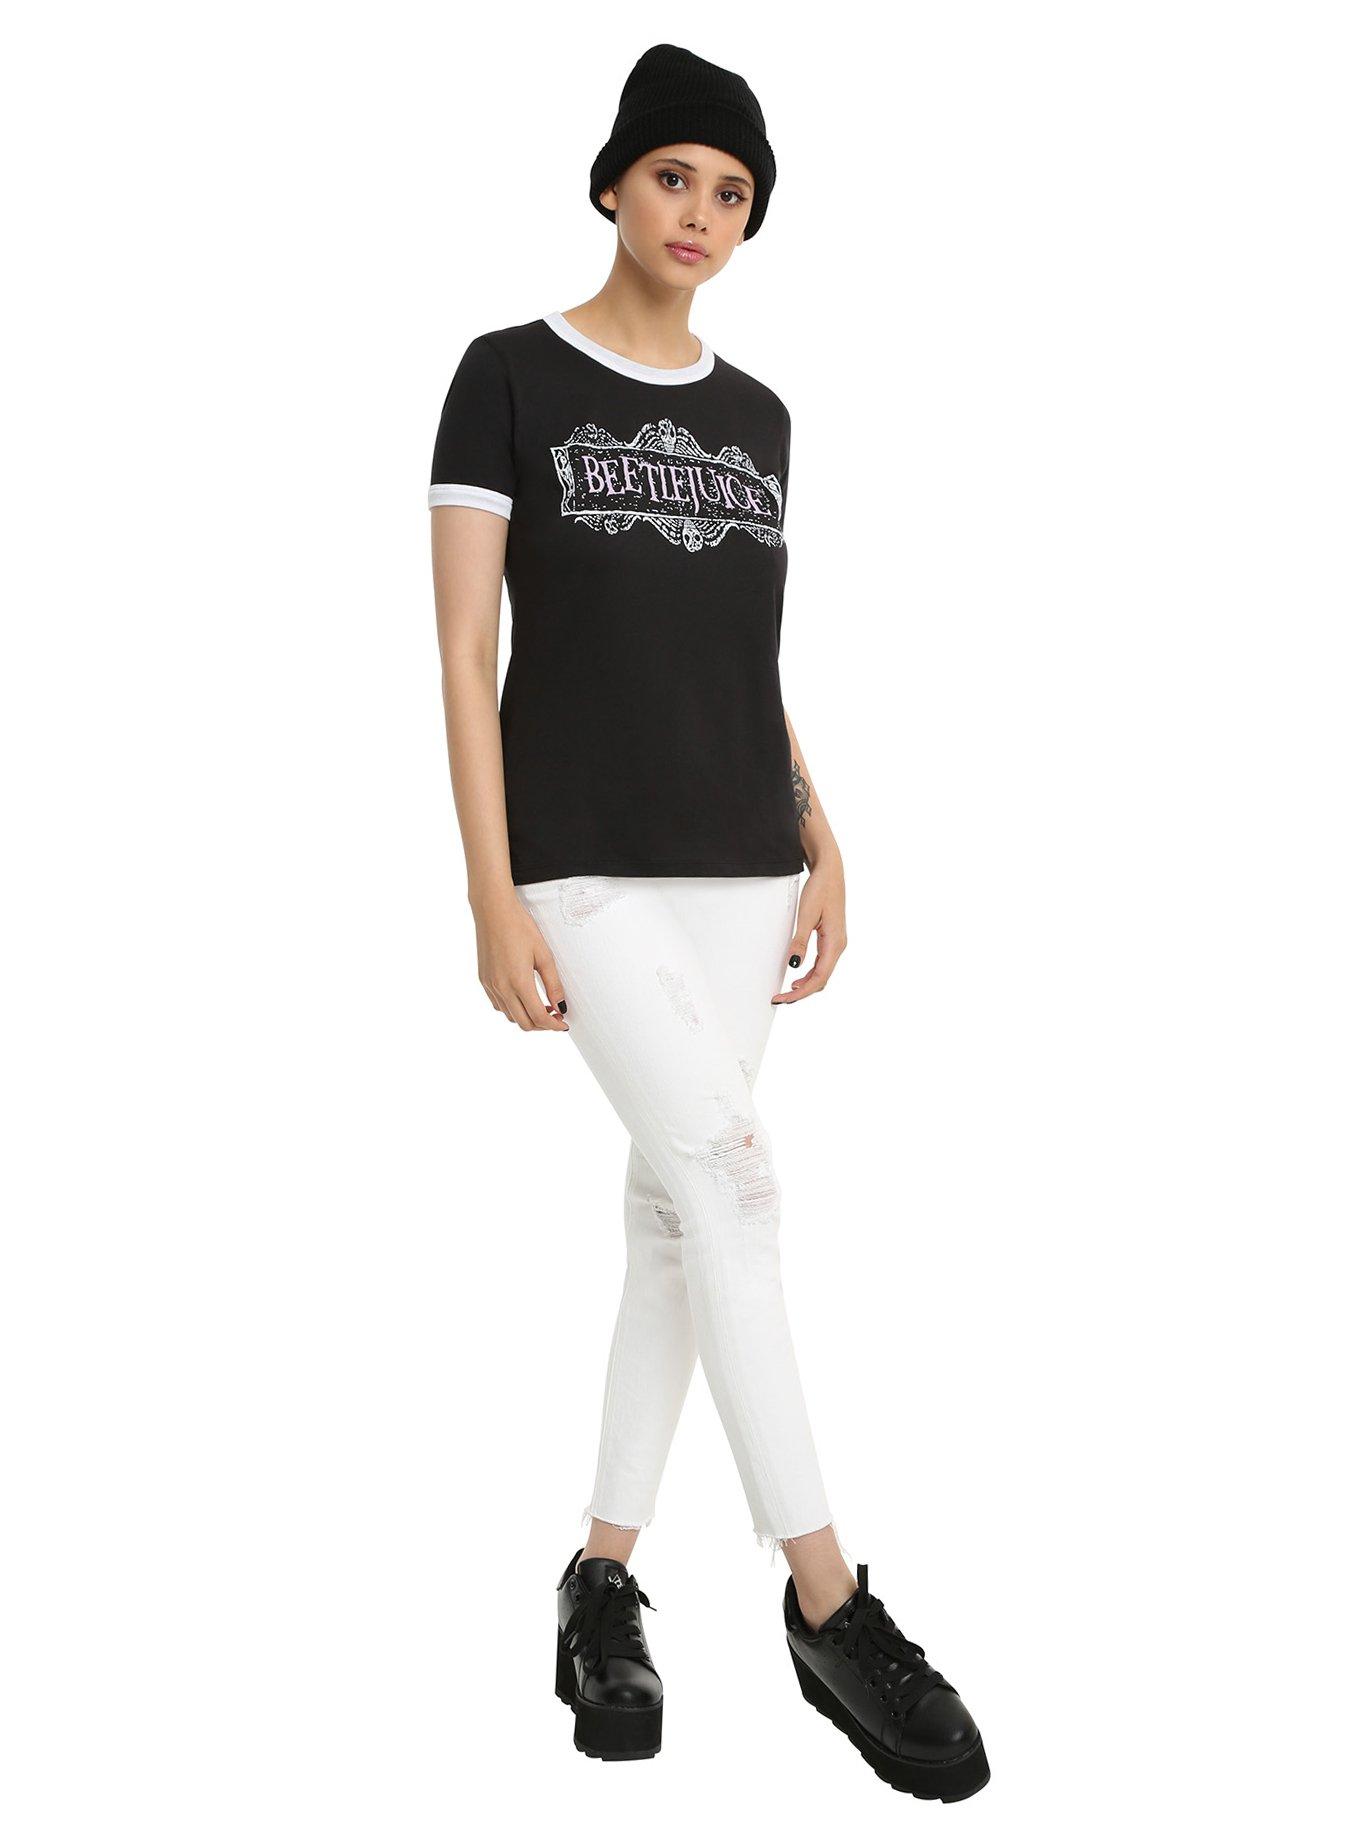 Beetlejuice Logo Girls Ringer T-Shirt, , alternate